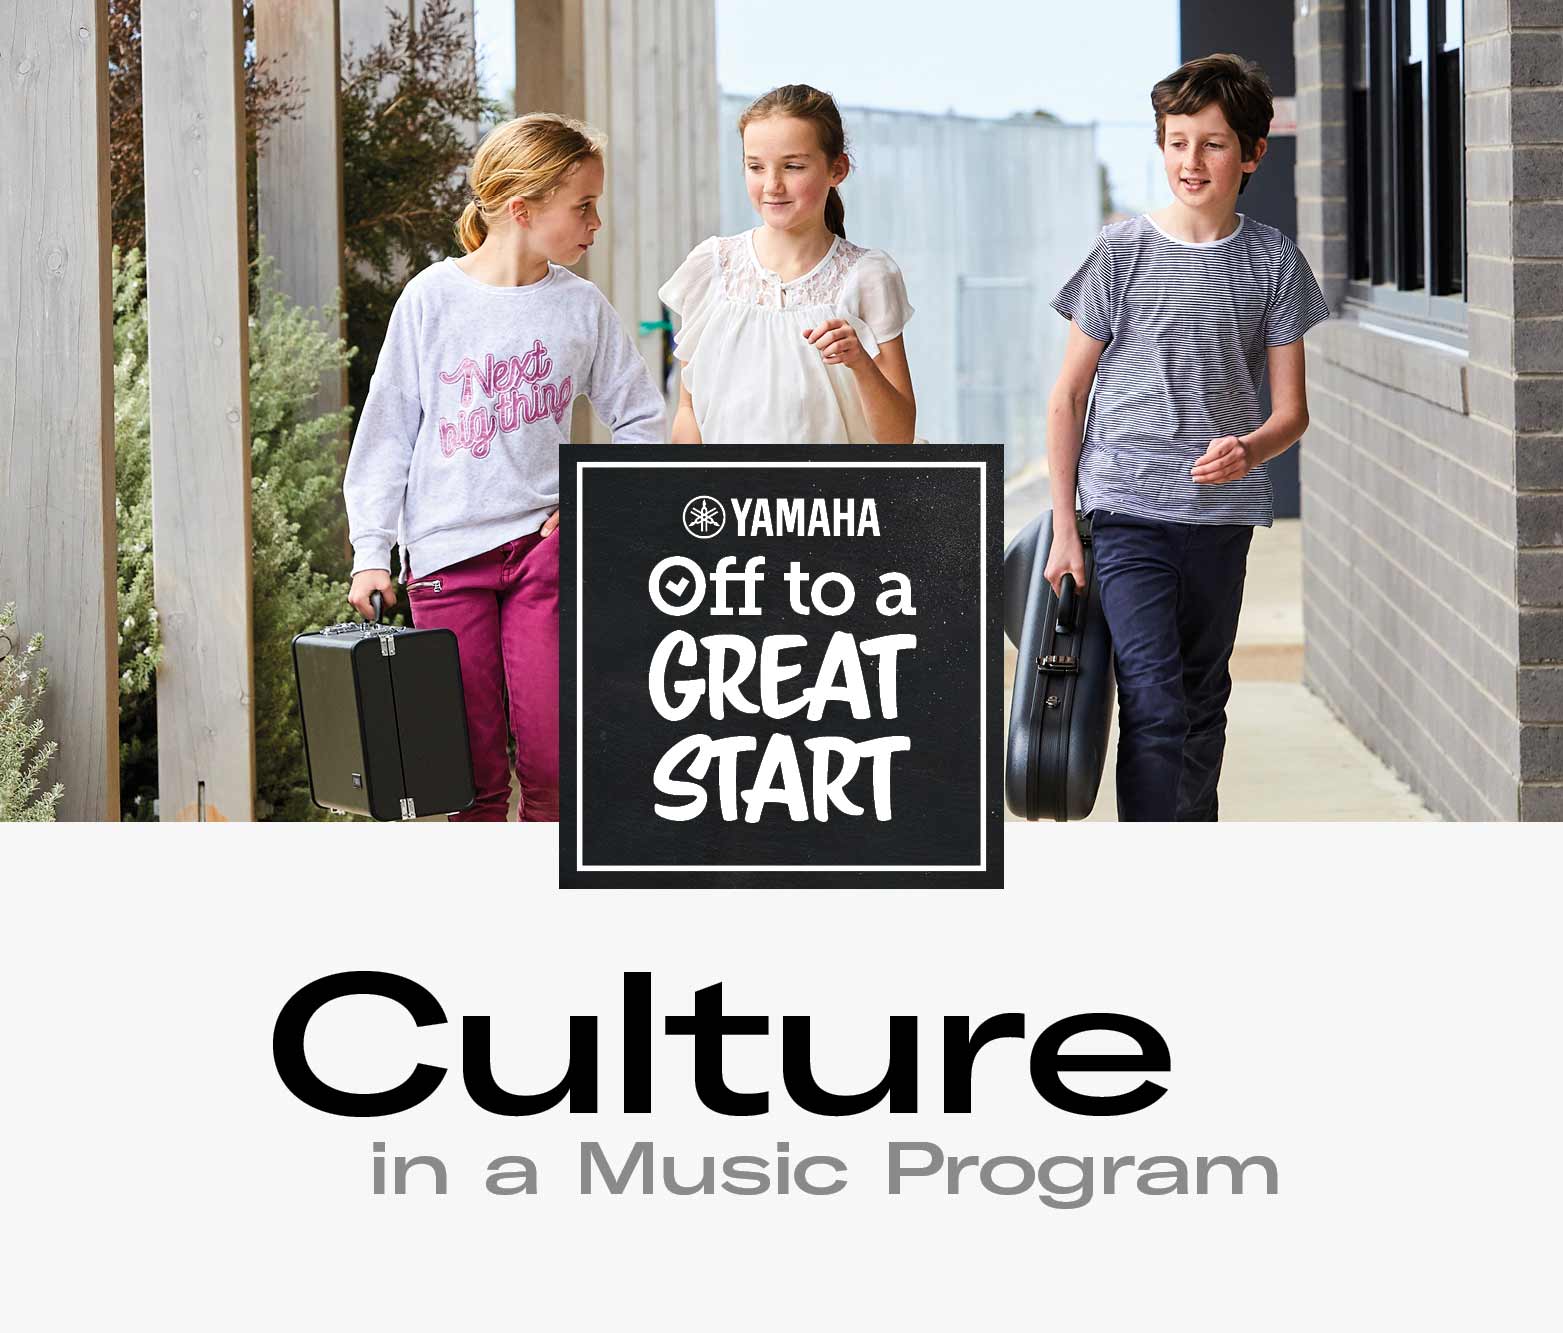 Culture in a Music Program